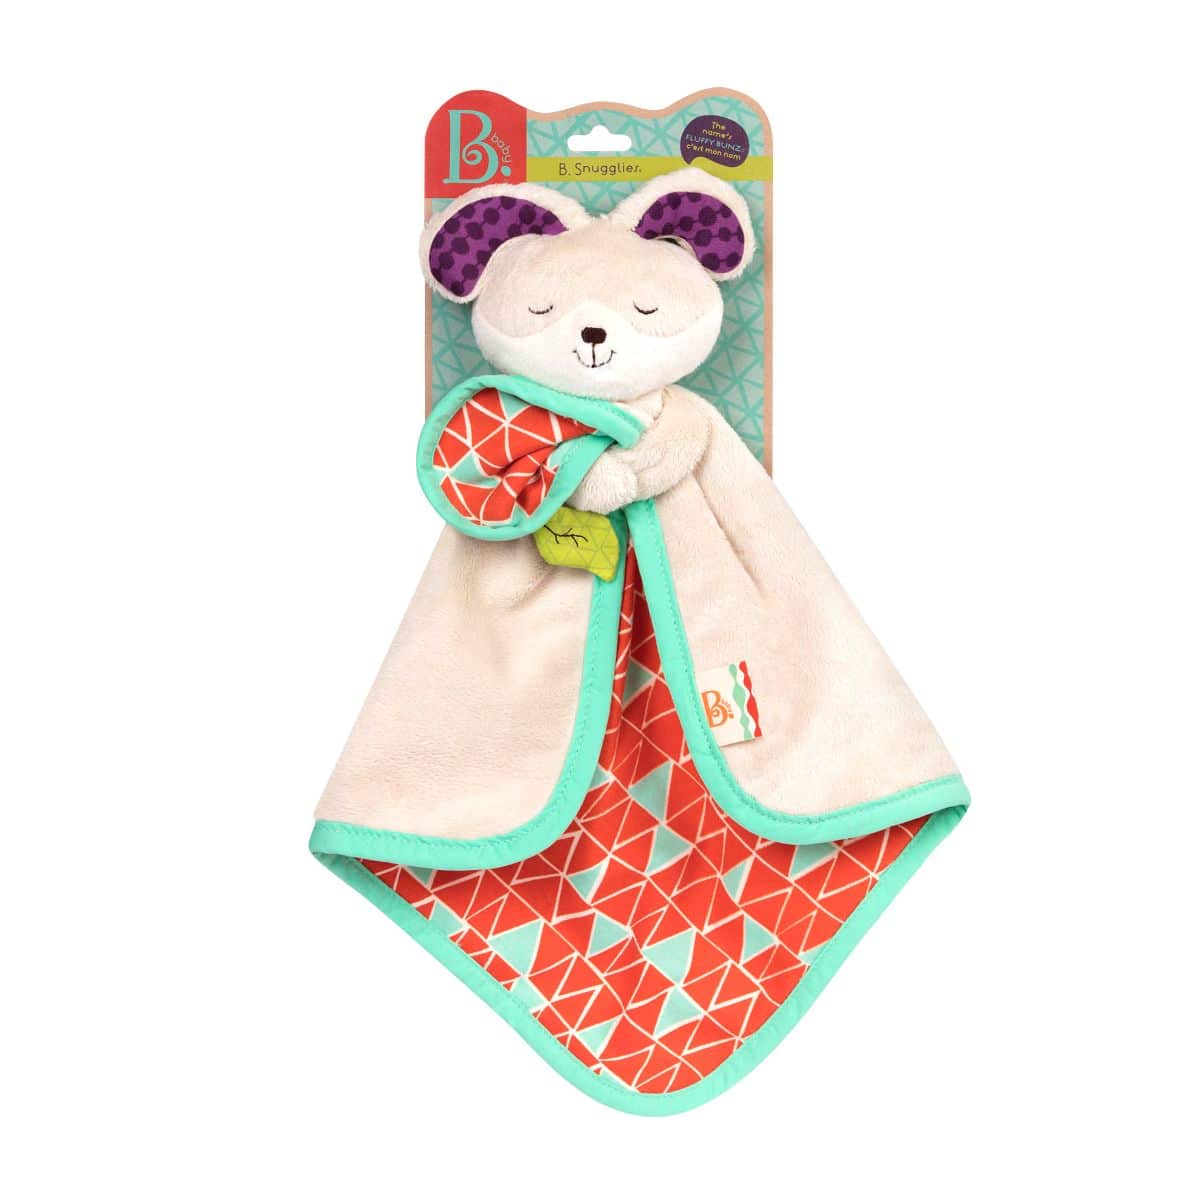 Baby cuddly blanket cuddly blanket rabbit/soft toy cuddly toy cuddly toy